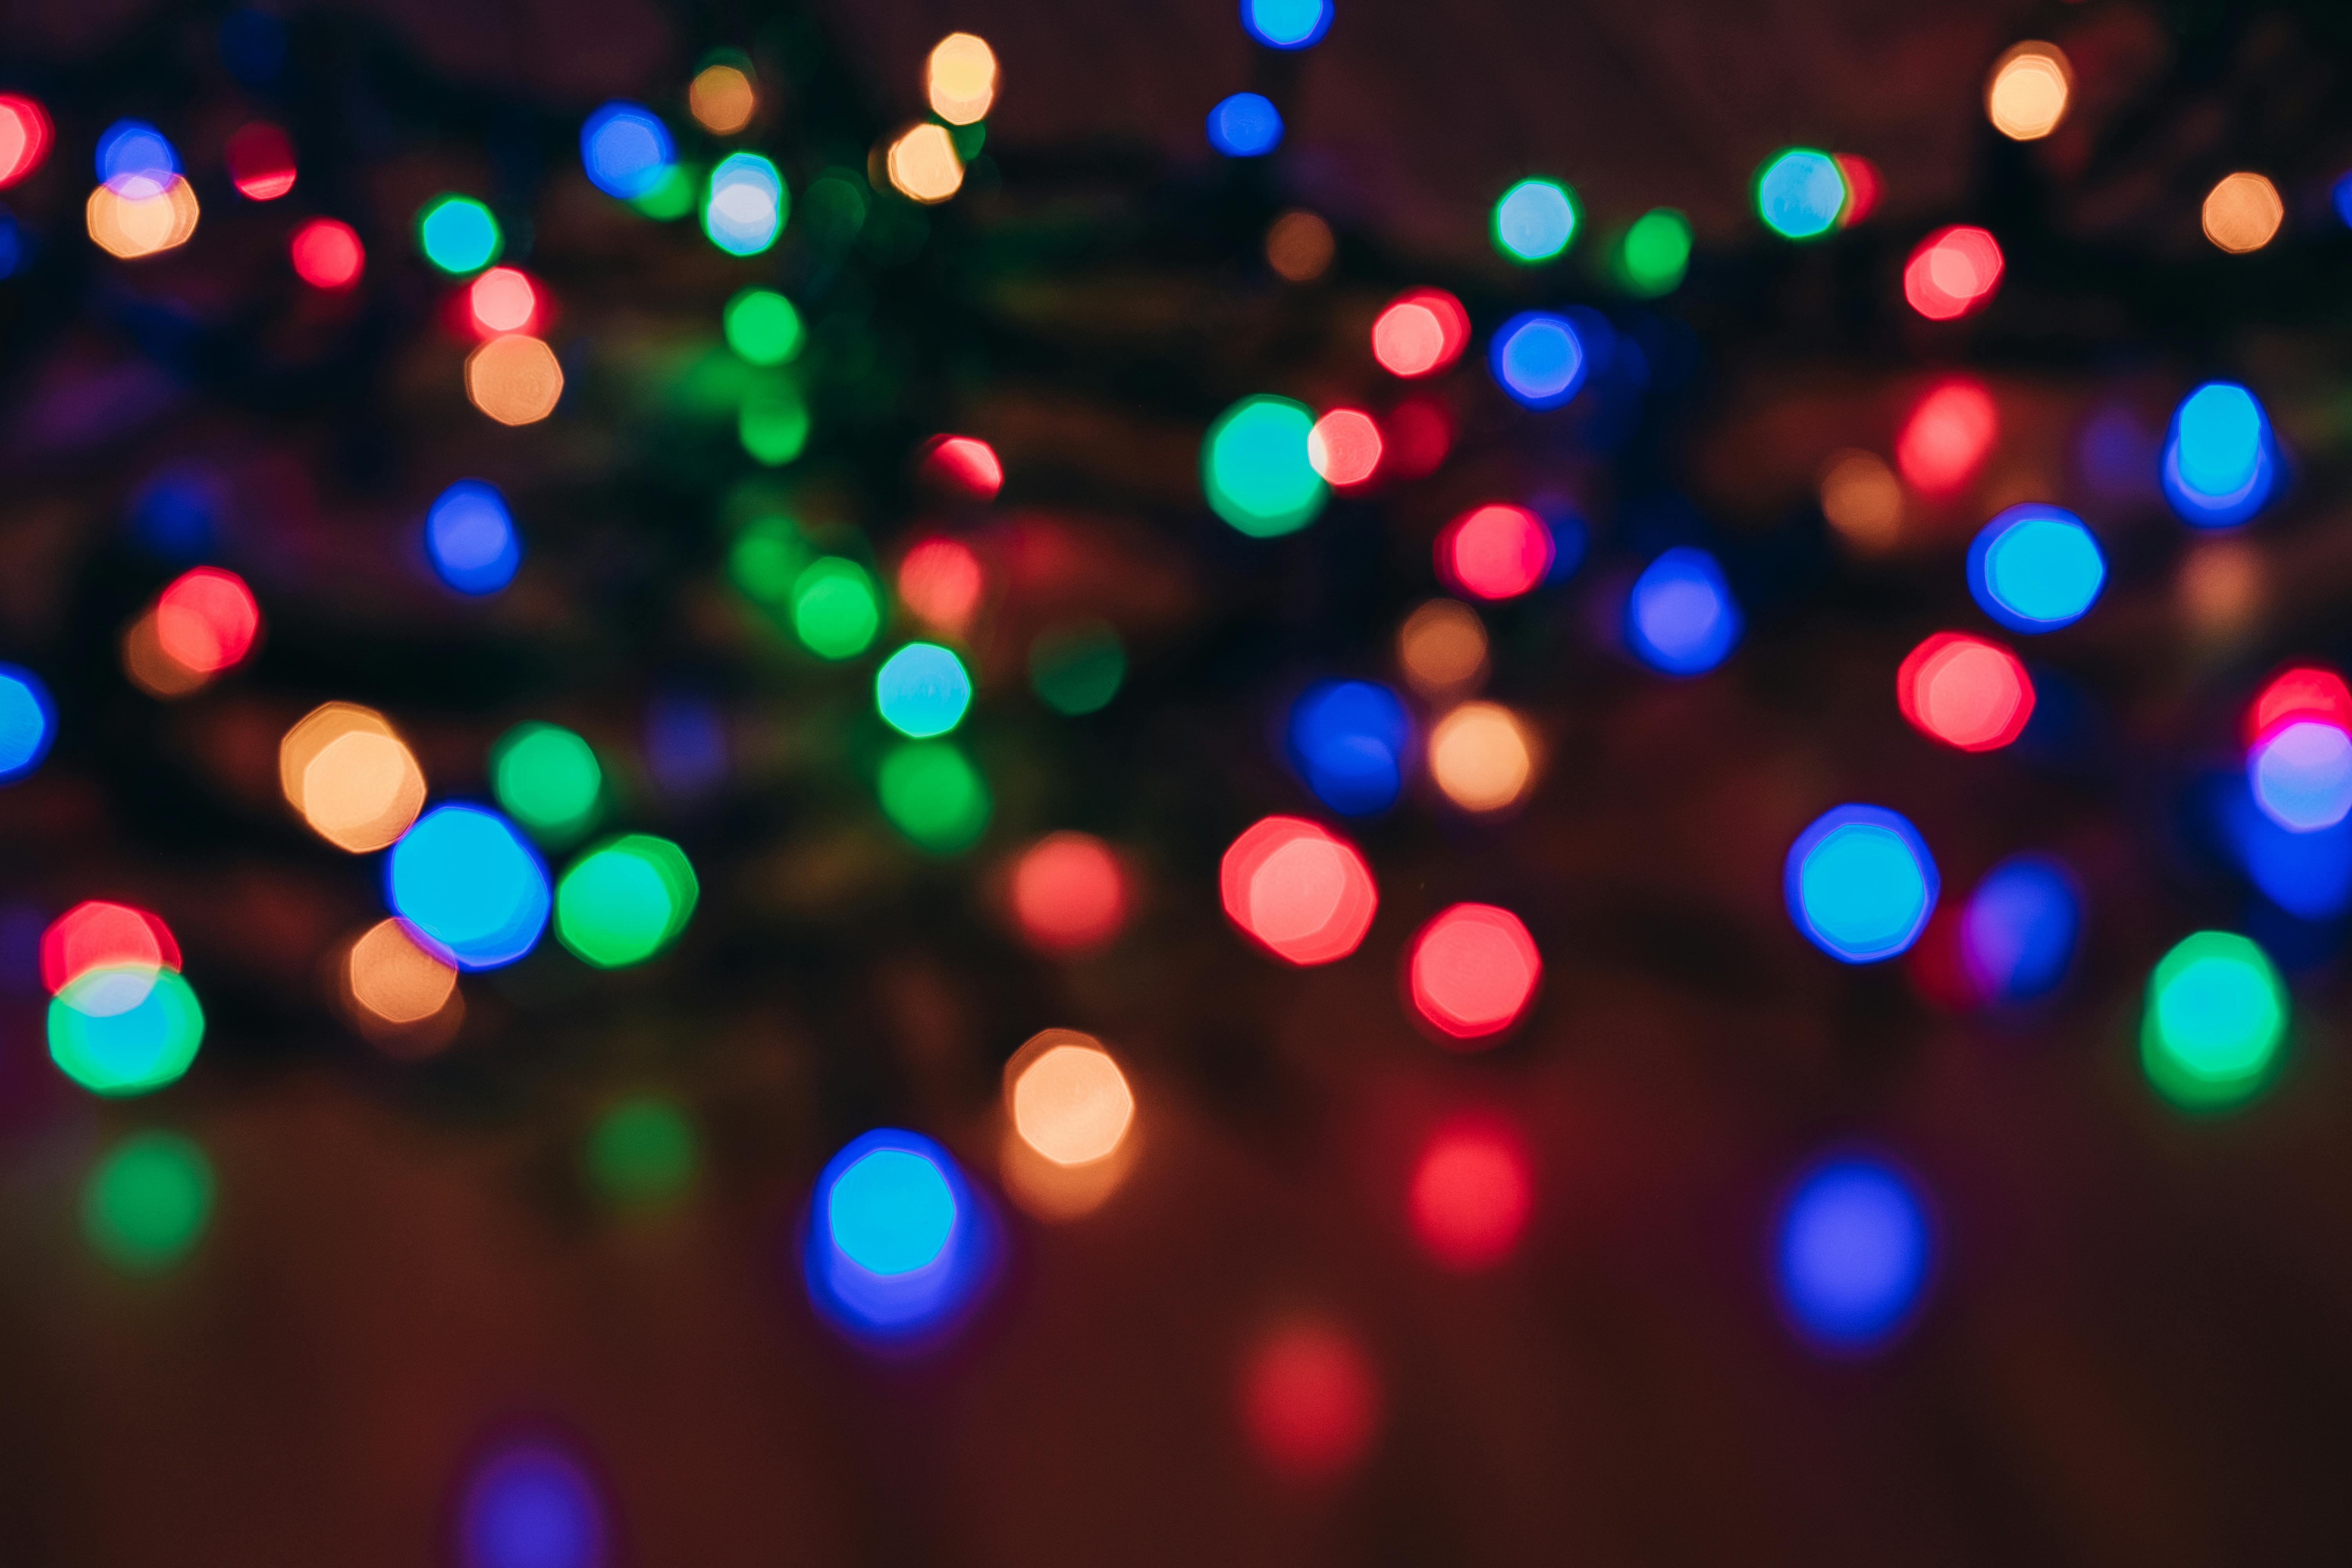 1000+ Beautiful Christmas Lights Photos · Pexels · Free Stock Photos